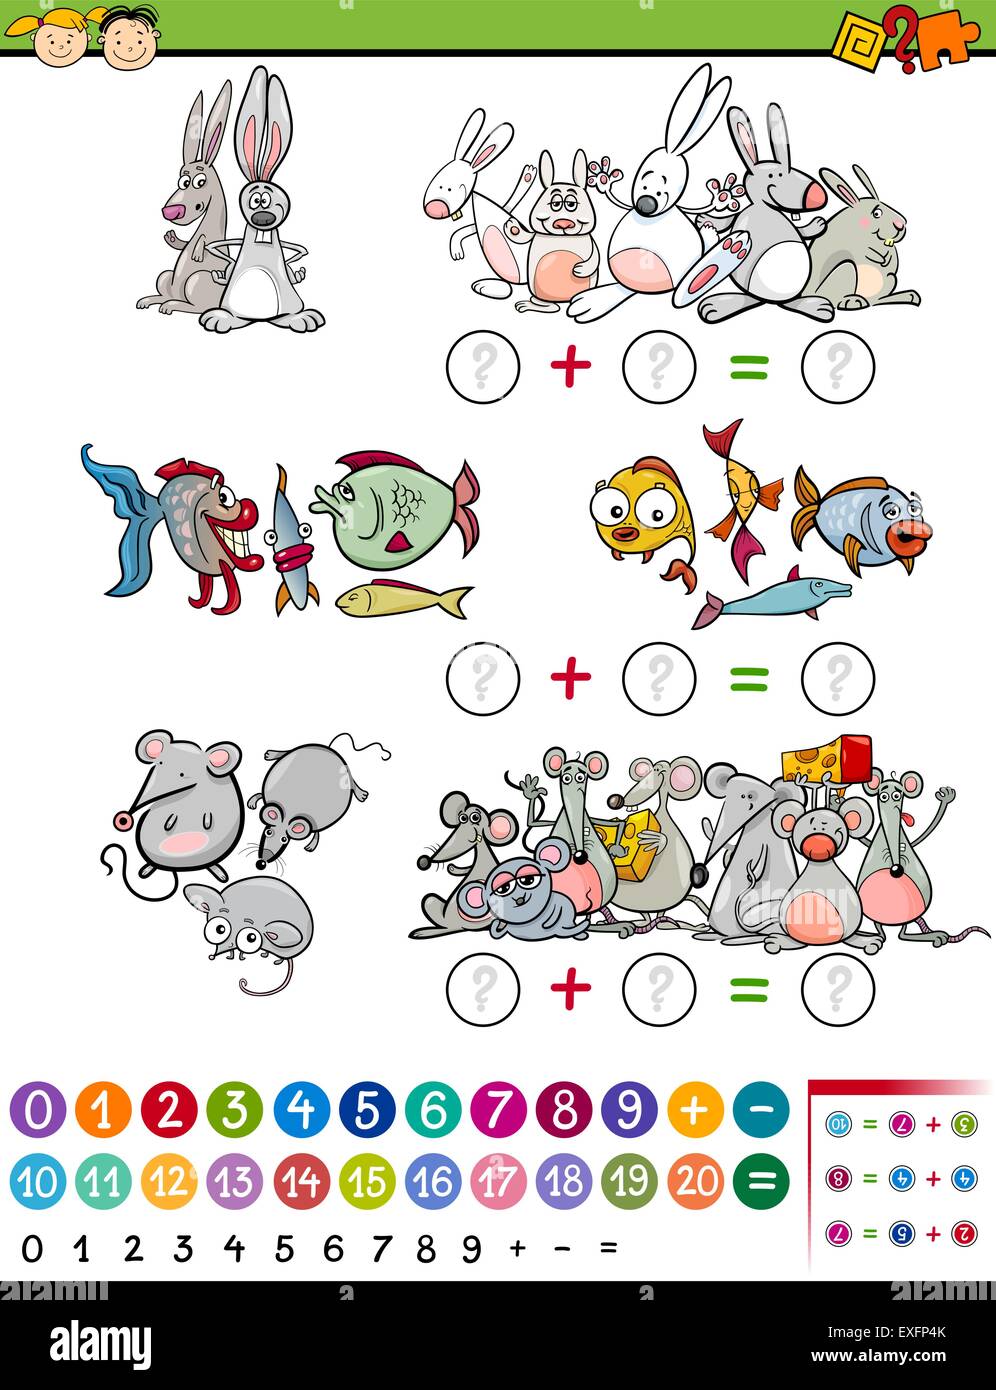 5 Juegos matemáticos para niños en edad preescolar